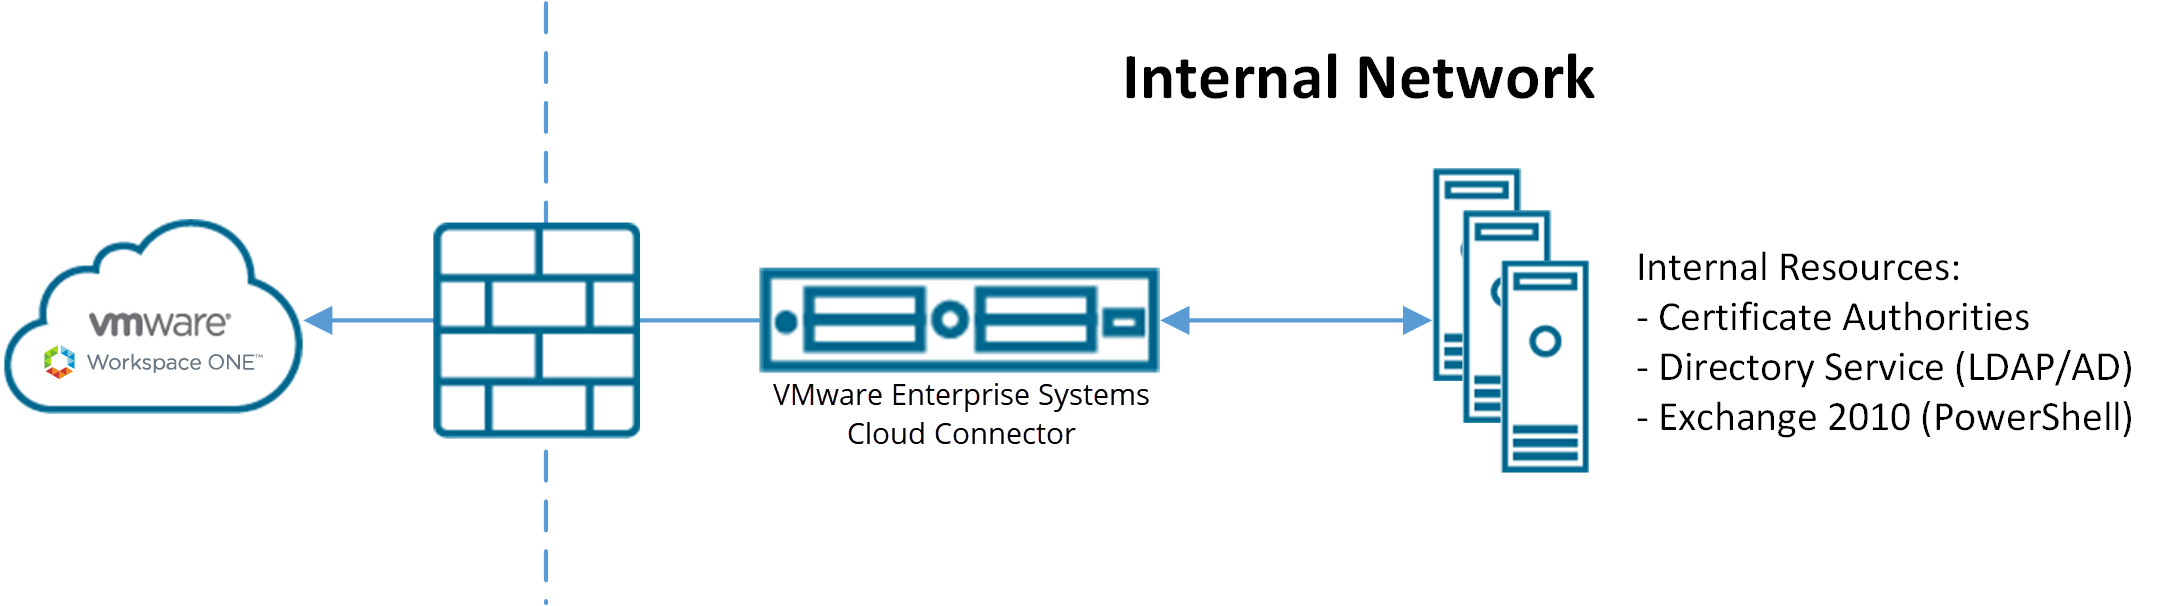 Questo diagramma mostra il connettore di VMware Cloud che offre l'accesso a Workspace ONE nel cloud attraverso il firewall, consentendo contemporaneamente l'accesso alle risorse interne di rete.